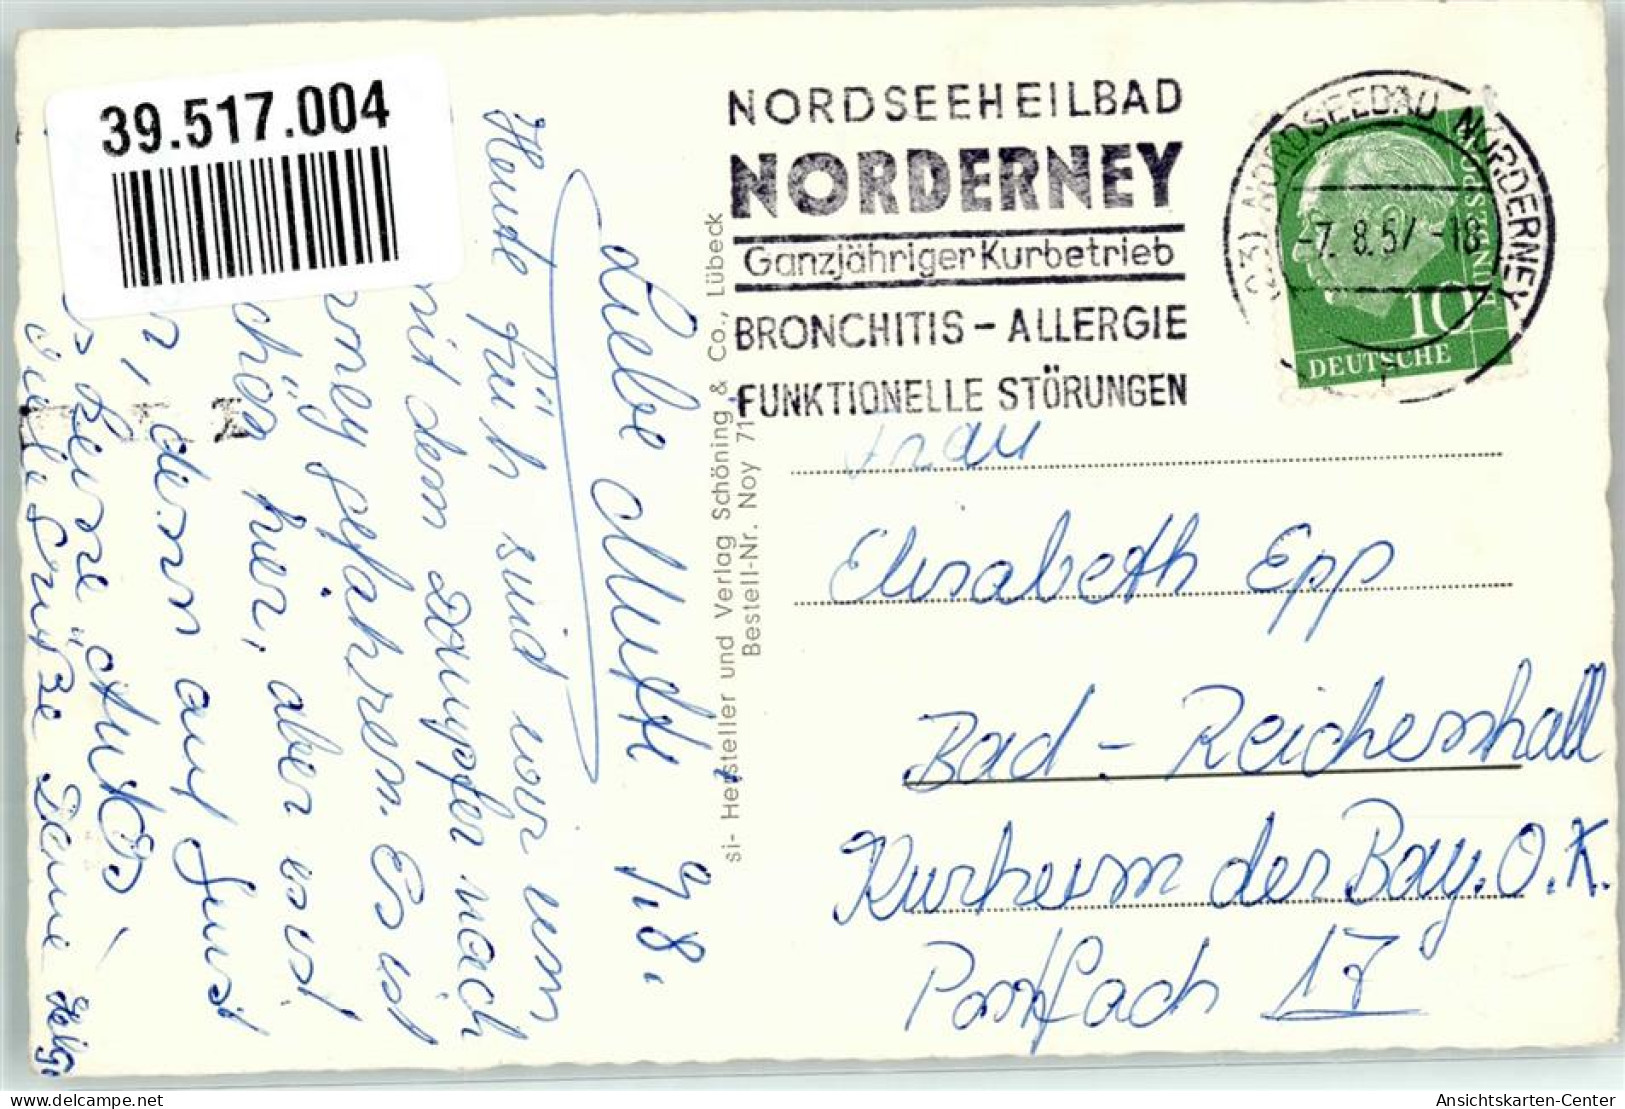 39517004 - Norderney - Norderney